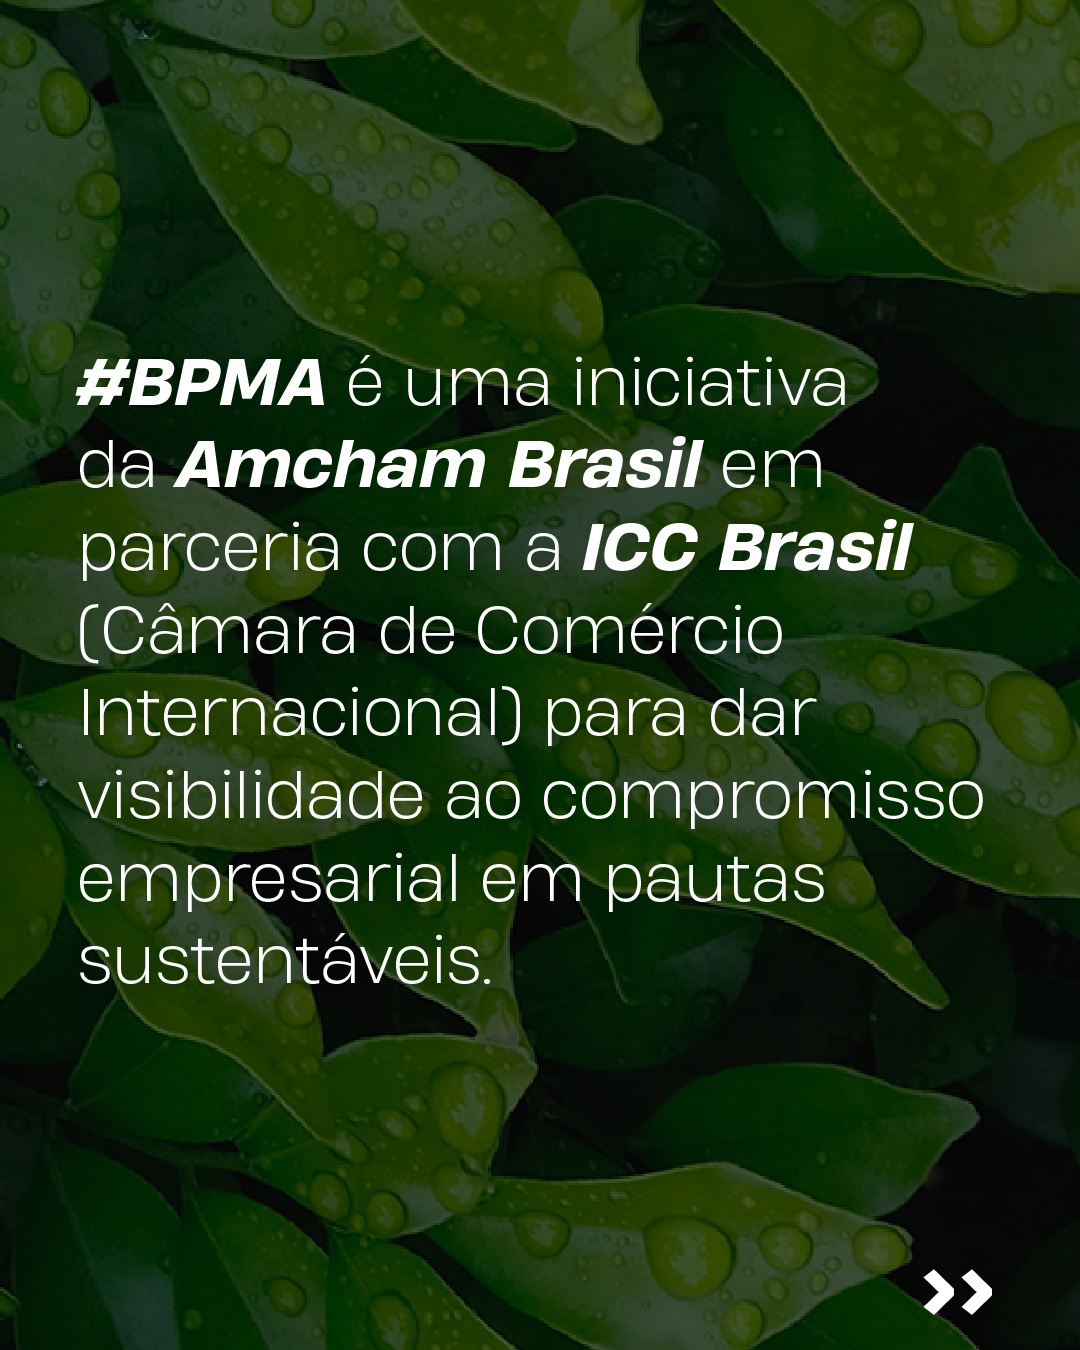 Amcham e ICC Brasil lançam mobilização empresarial pelo meio ambiente